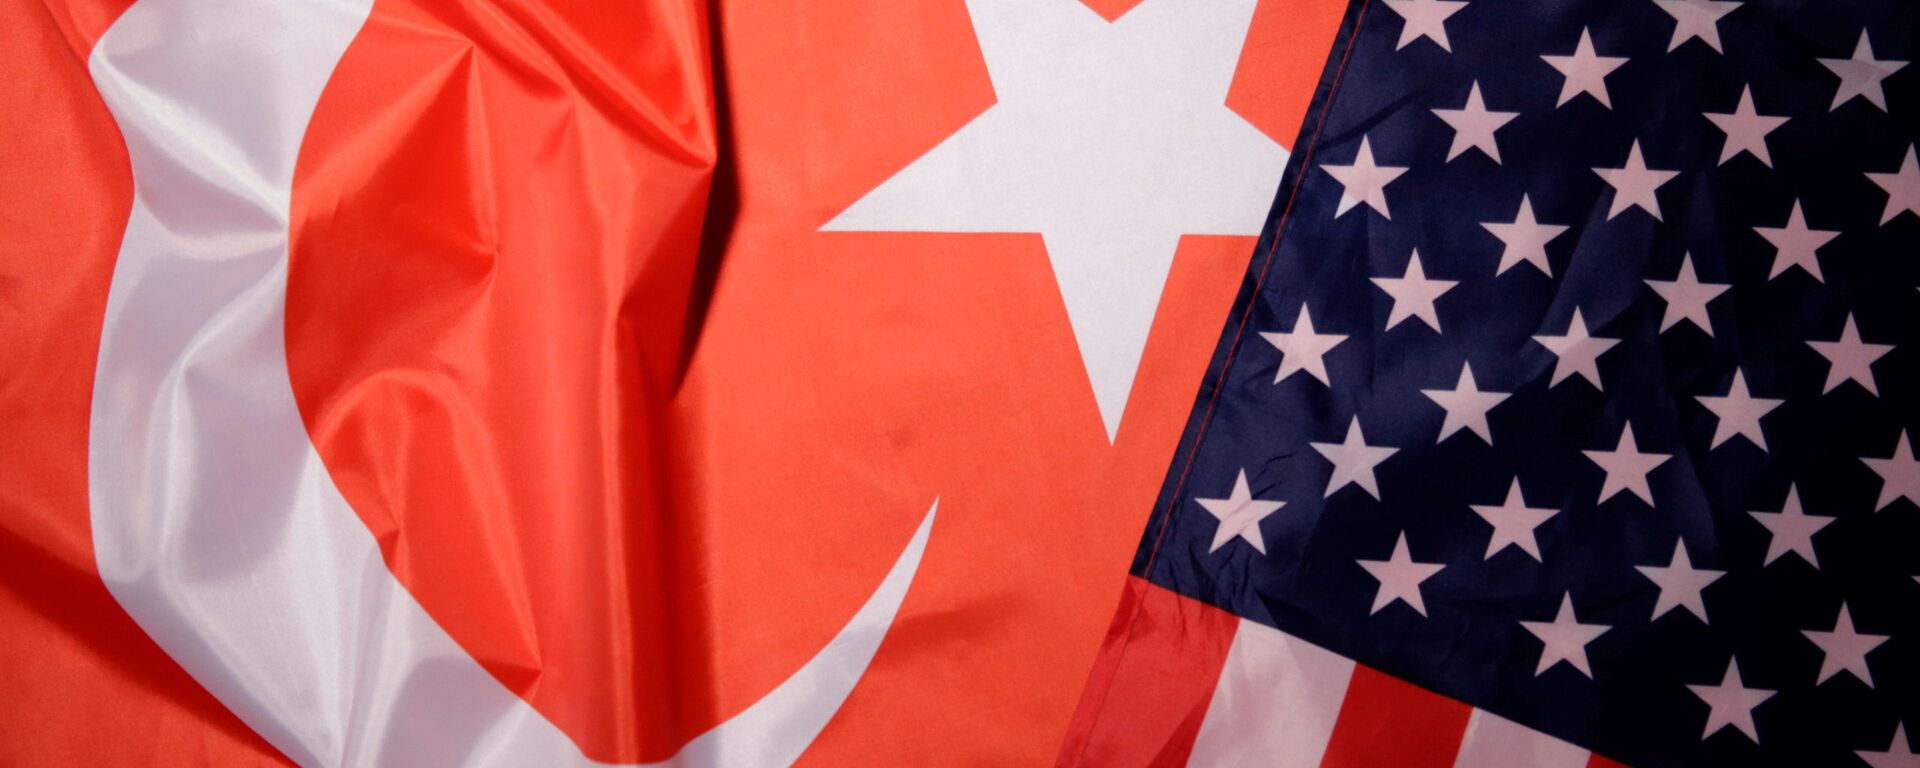 ABD ve Türkiye bayrakları - Sputnik Türkiye, 1920, 21.07.2021